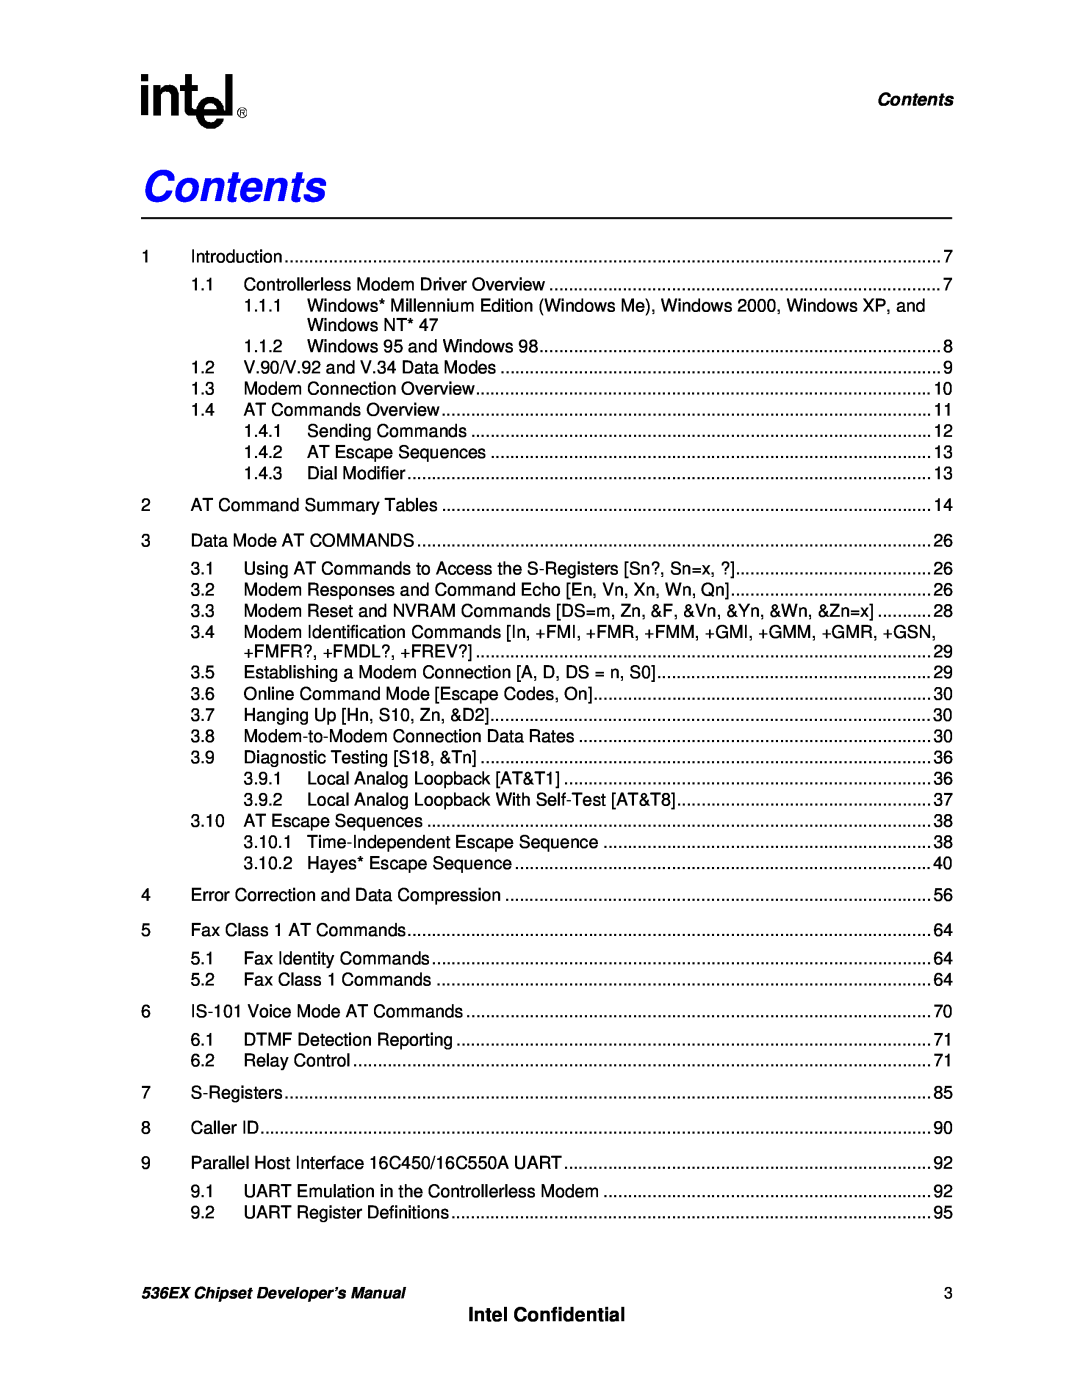 Intel 537EX manual Contents, Intel Confidential 